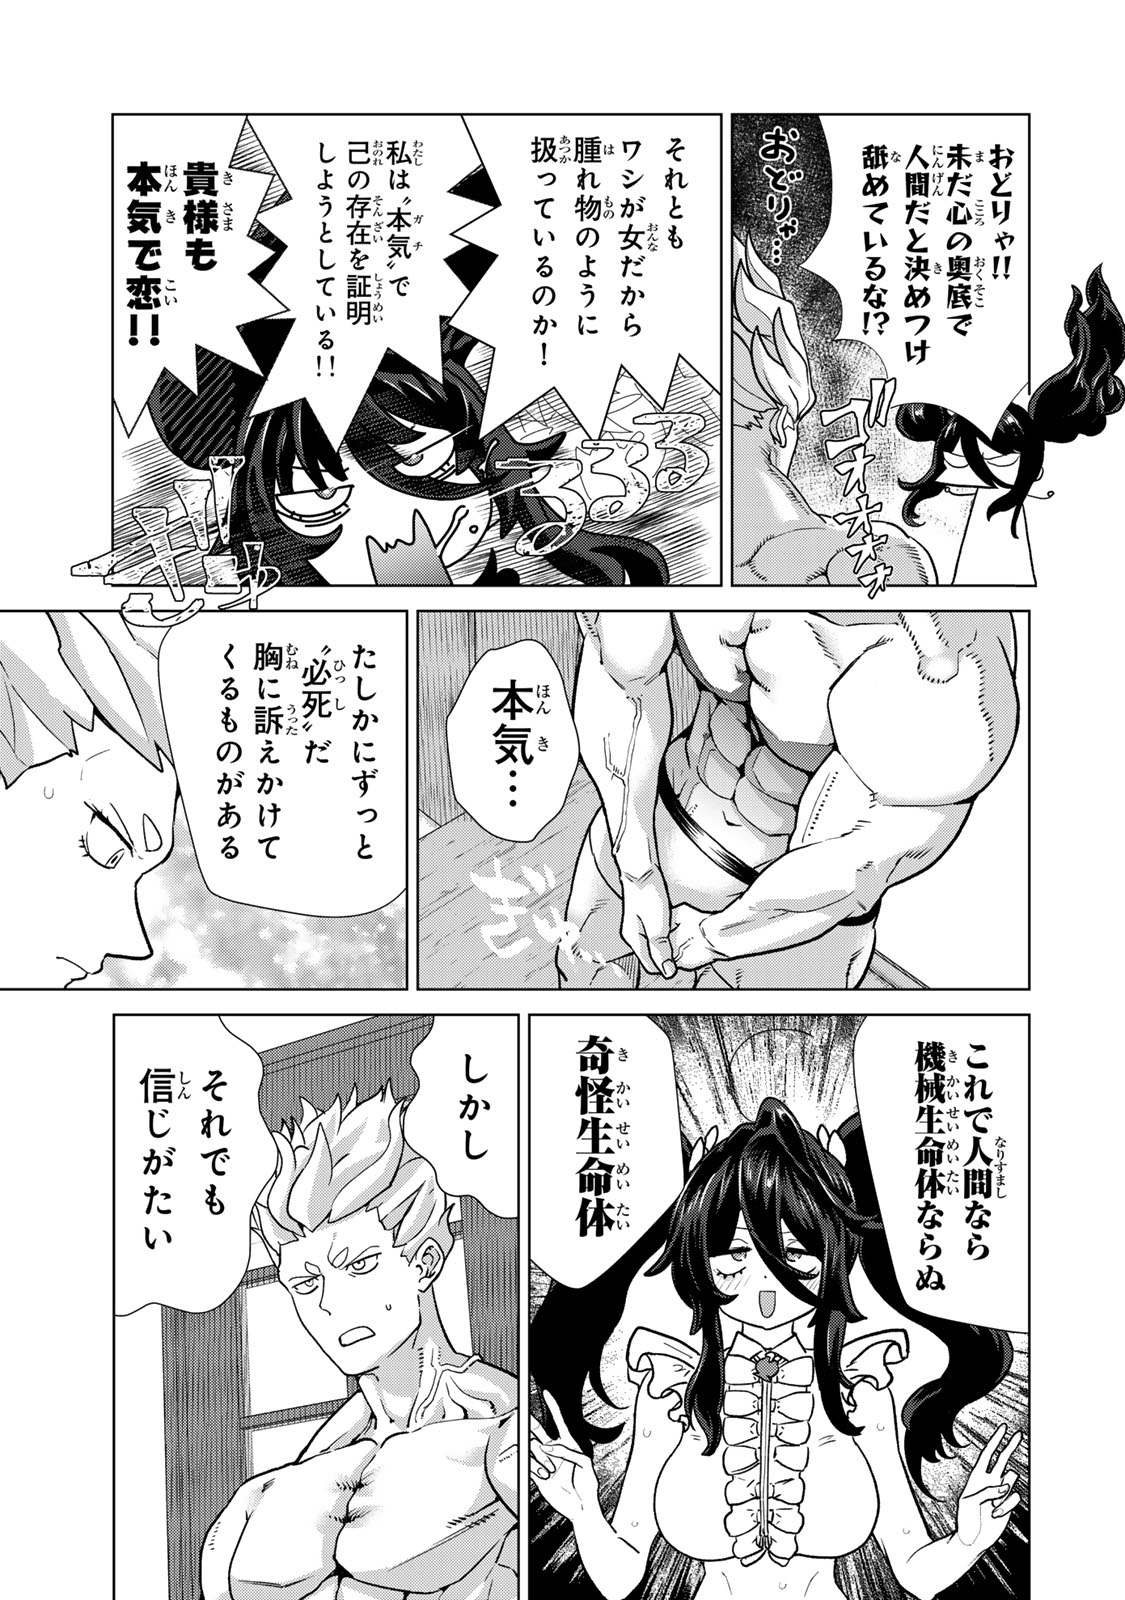 Yappa Ningen Yamete Seikai da wa - Chapter 3 - Page 13